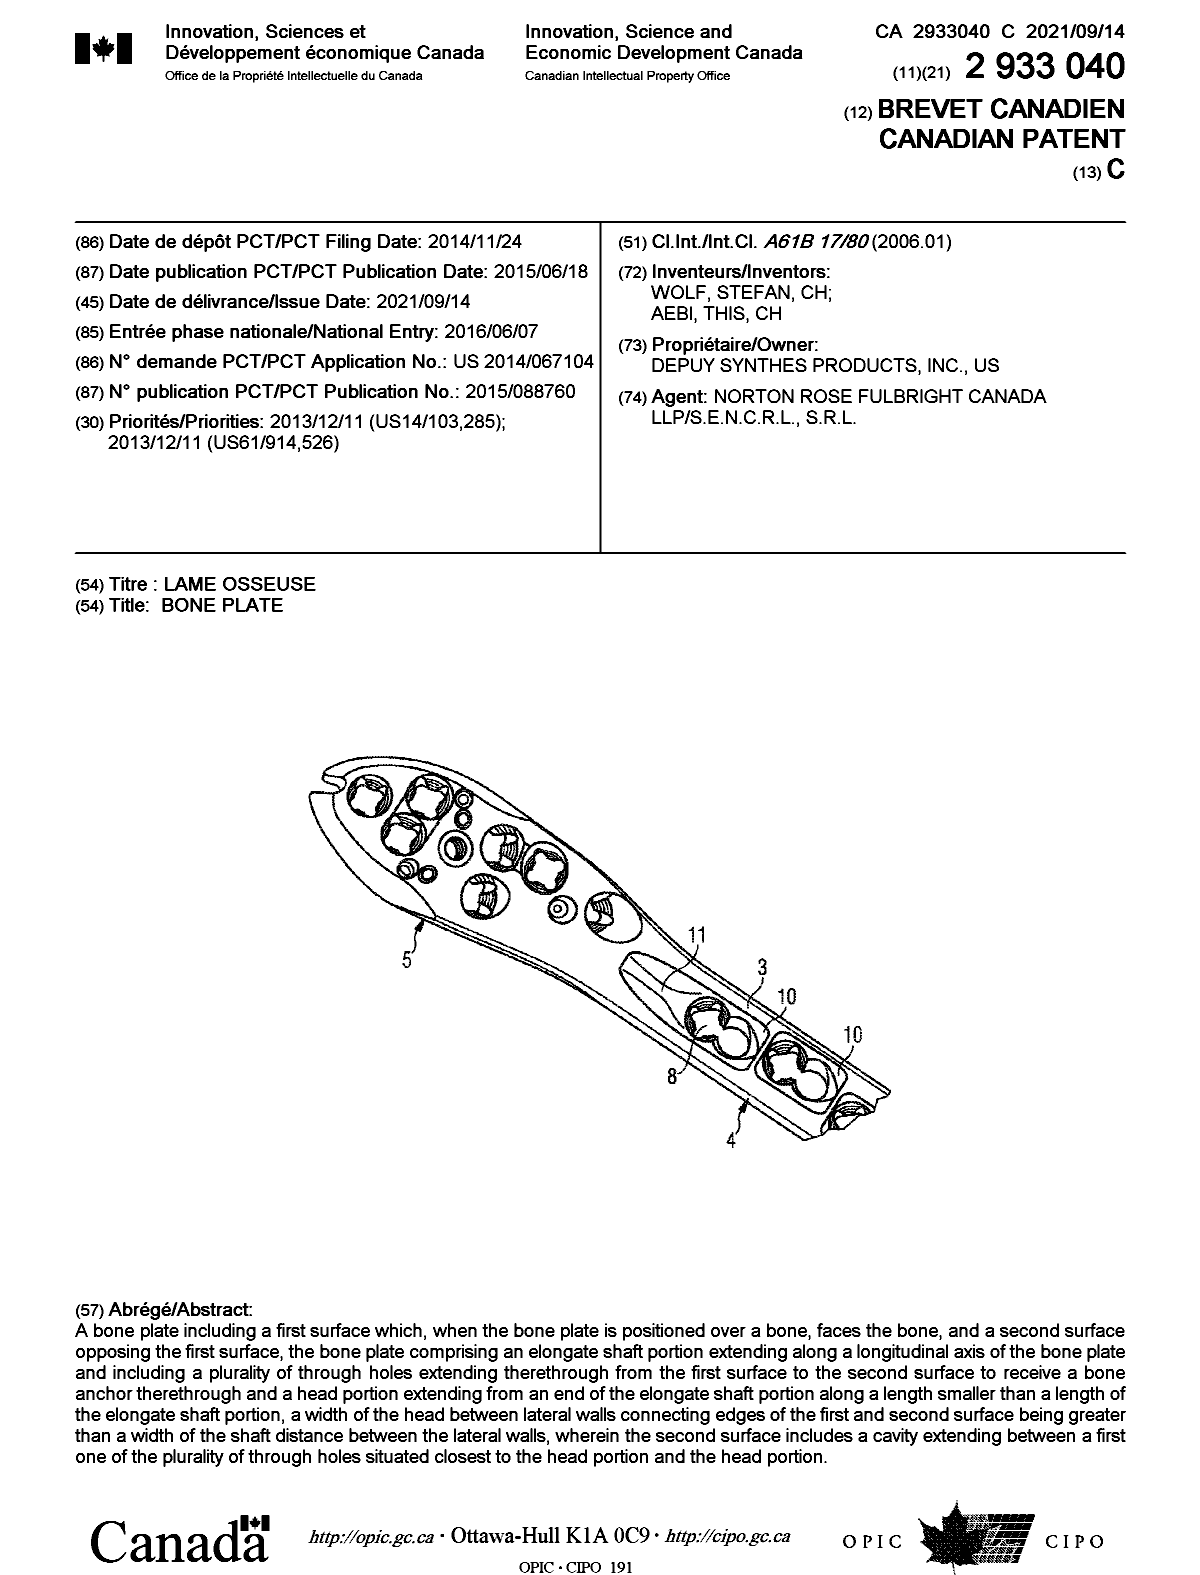 Document de brevet canadien 2933040. Page couverture 20210817. Image 1 de 1